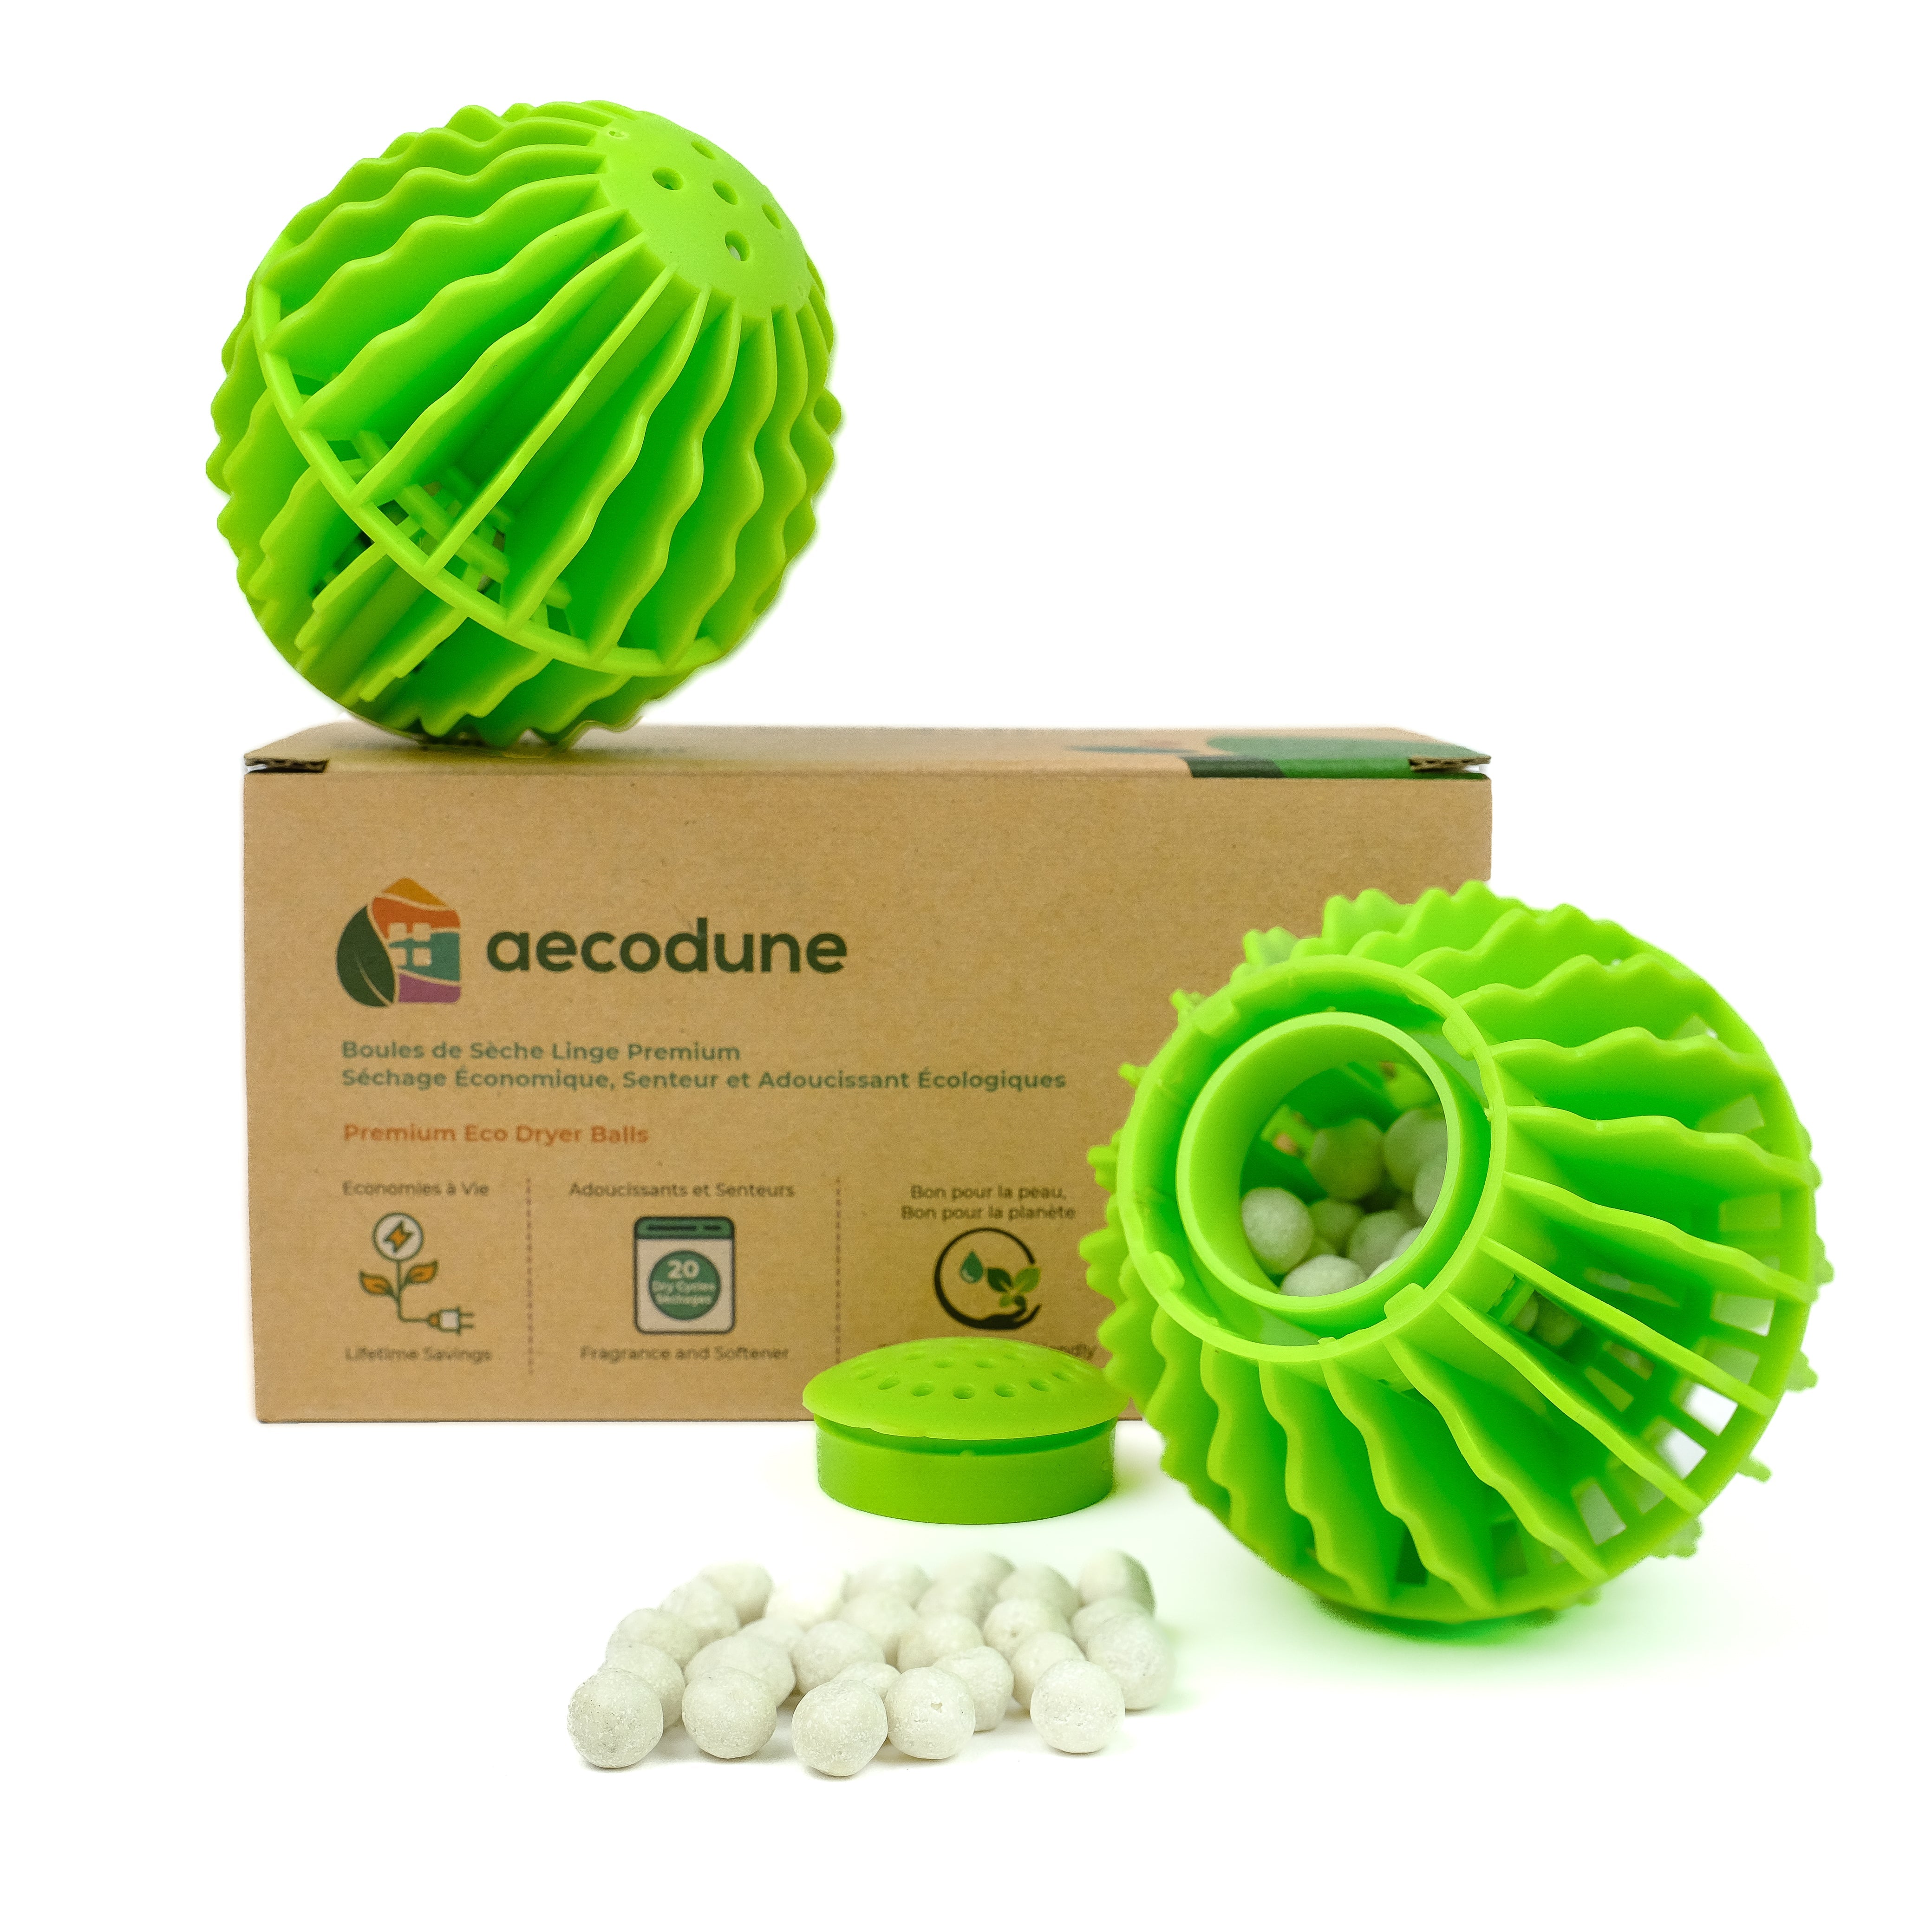 aecodune Innovative, wirtschaftliche und ökologische Trocknerbälle für weiche und duftende Wäsche